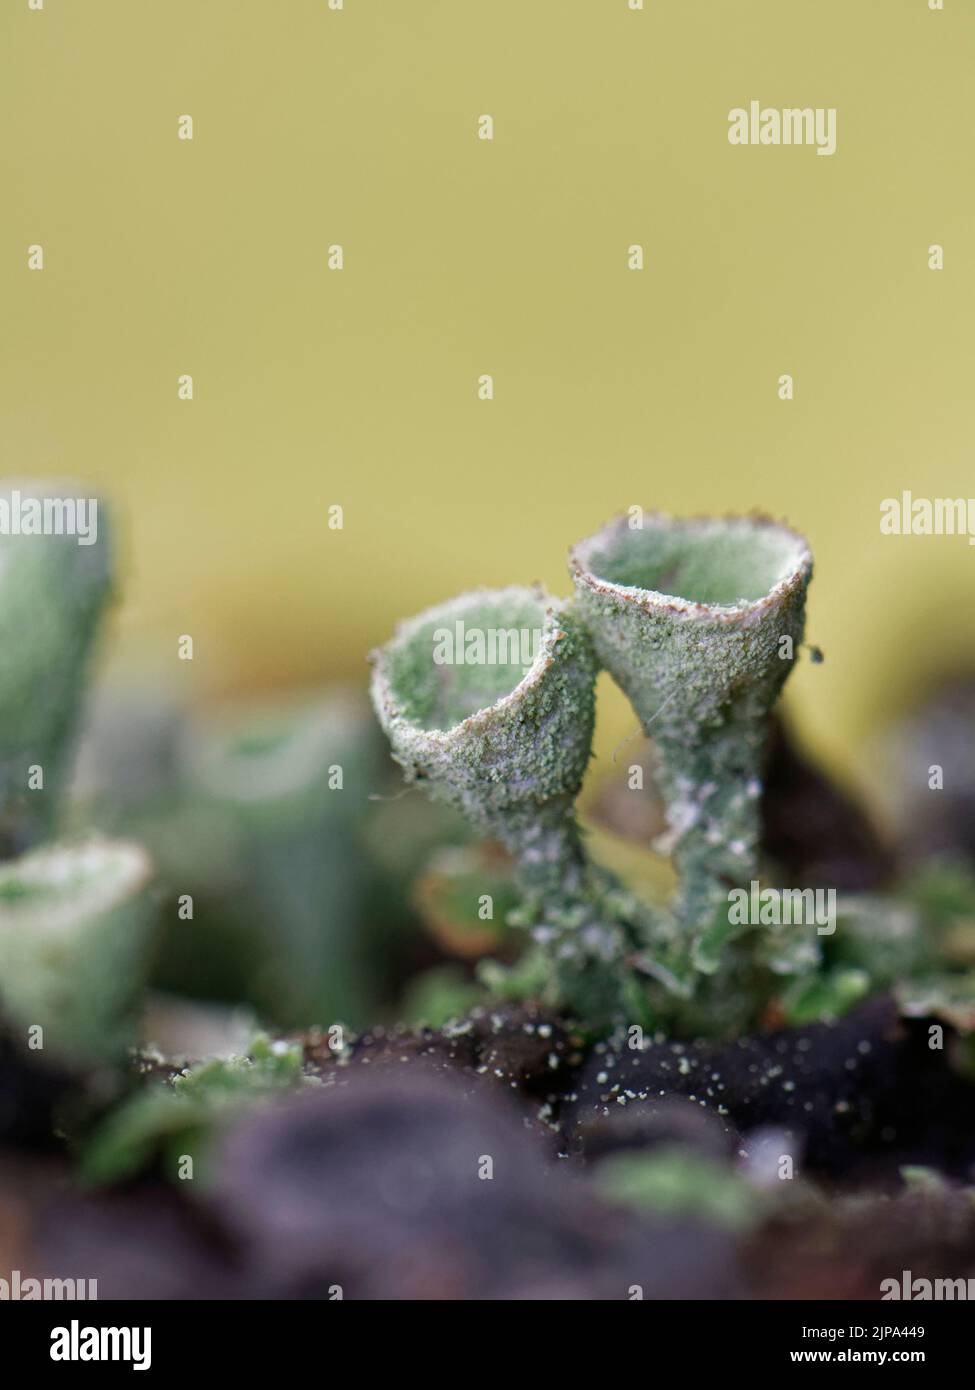 Coppa Pixie / lichen tromba in polvere (Cladonia fimbriata) con spore che formano coppe riproduttive, crescendo su un ramo di albero marcio, Kenfig NNR, Glamorgan Foto Stock